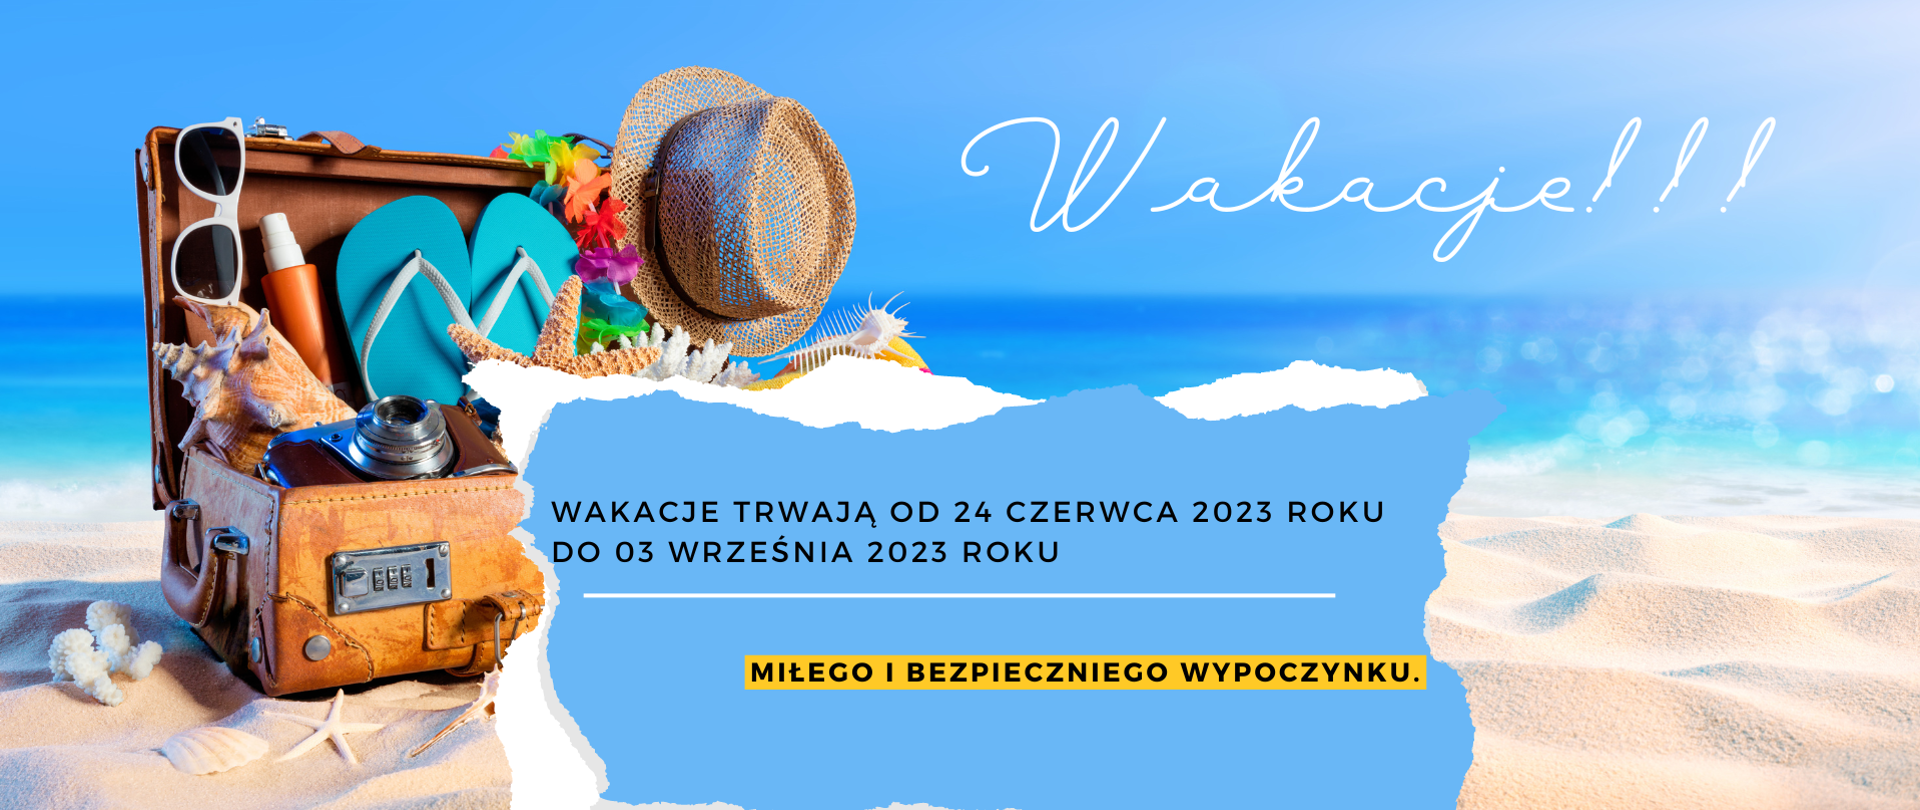 W tle morze, na plaży walizka, muszelki, napis Wakacje !!! poniżej wakacje trwają od 24 czerwca 2023 roku do 03 września 2023 roku. Poniżej na żółtym tle napis miłego i bezpiecznego wypoczynku.